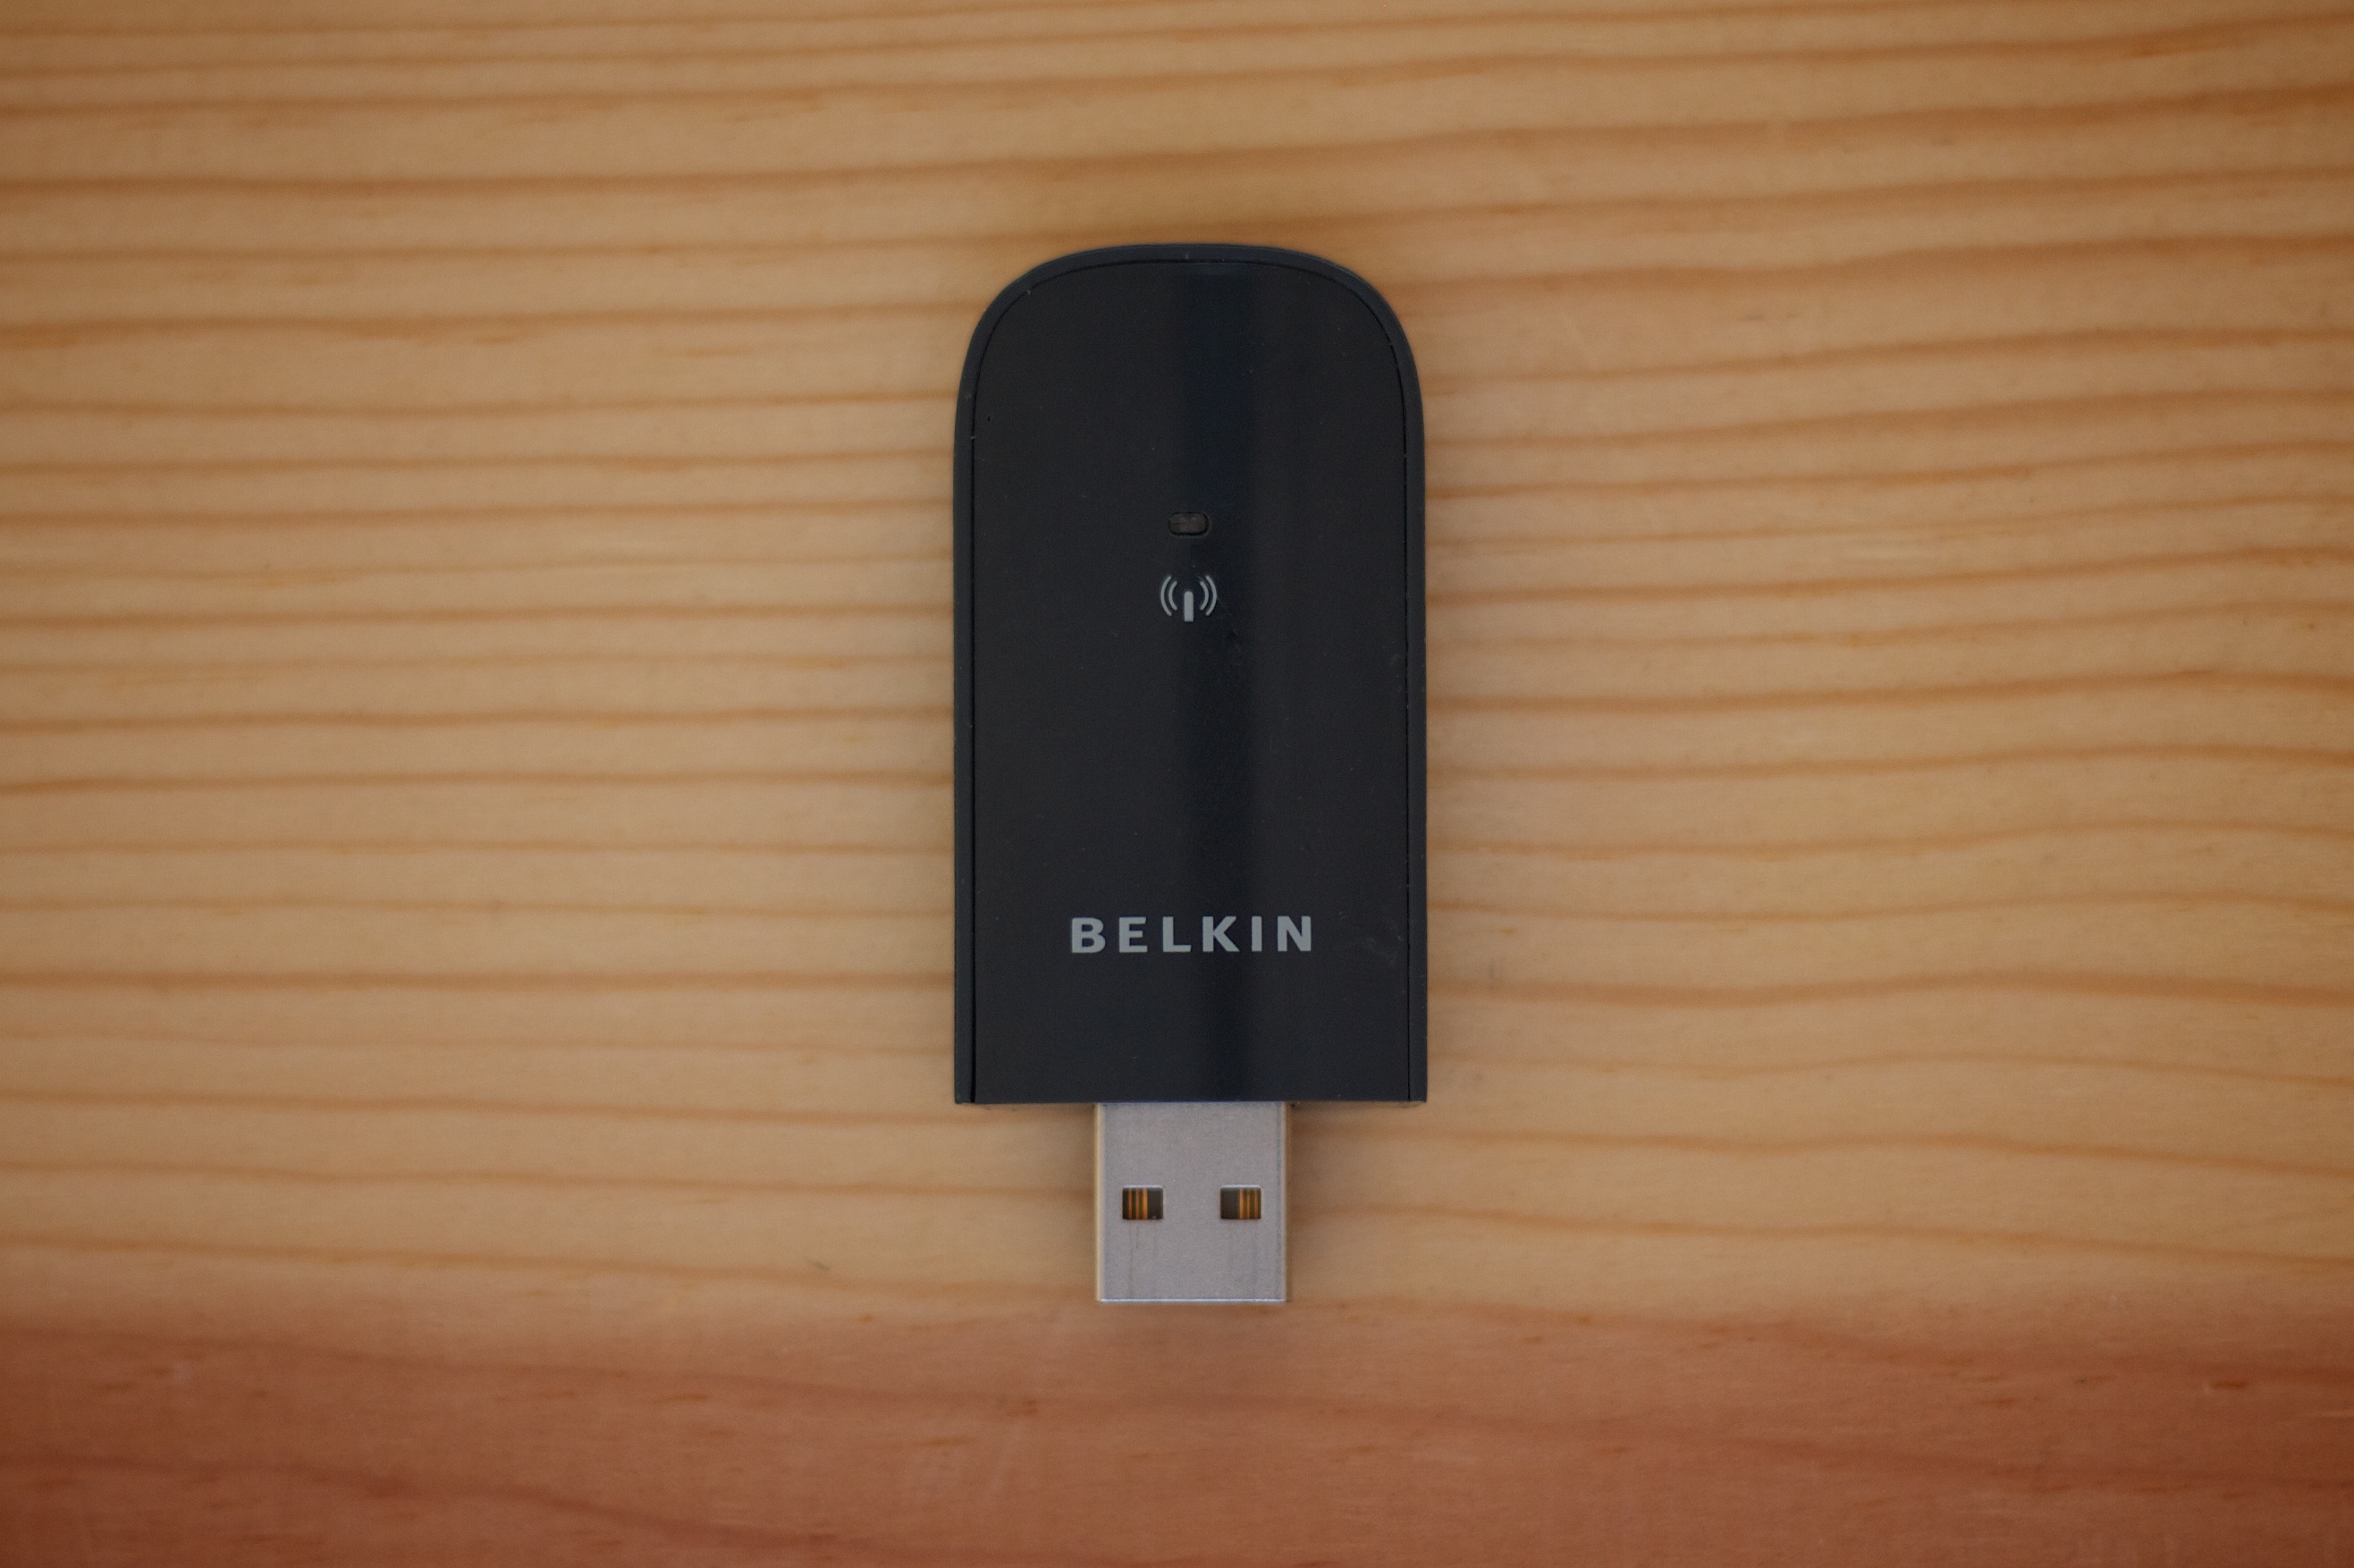 belkin n150 wireless usb adapter driver f9l1001v1 download